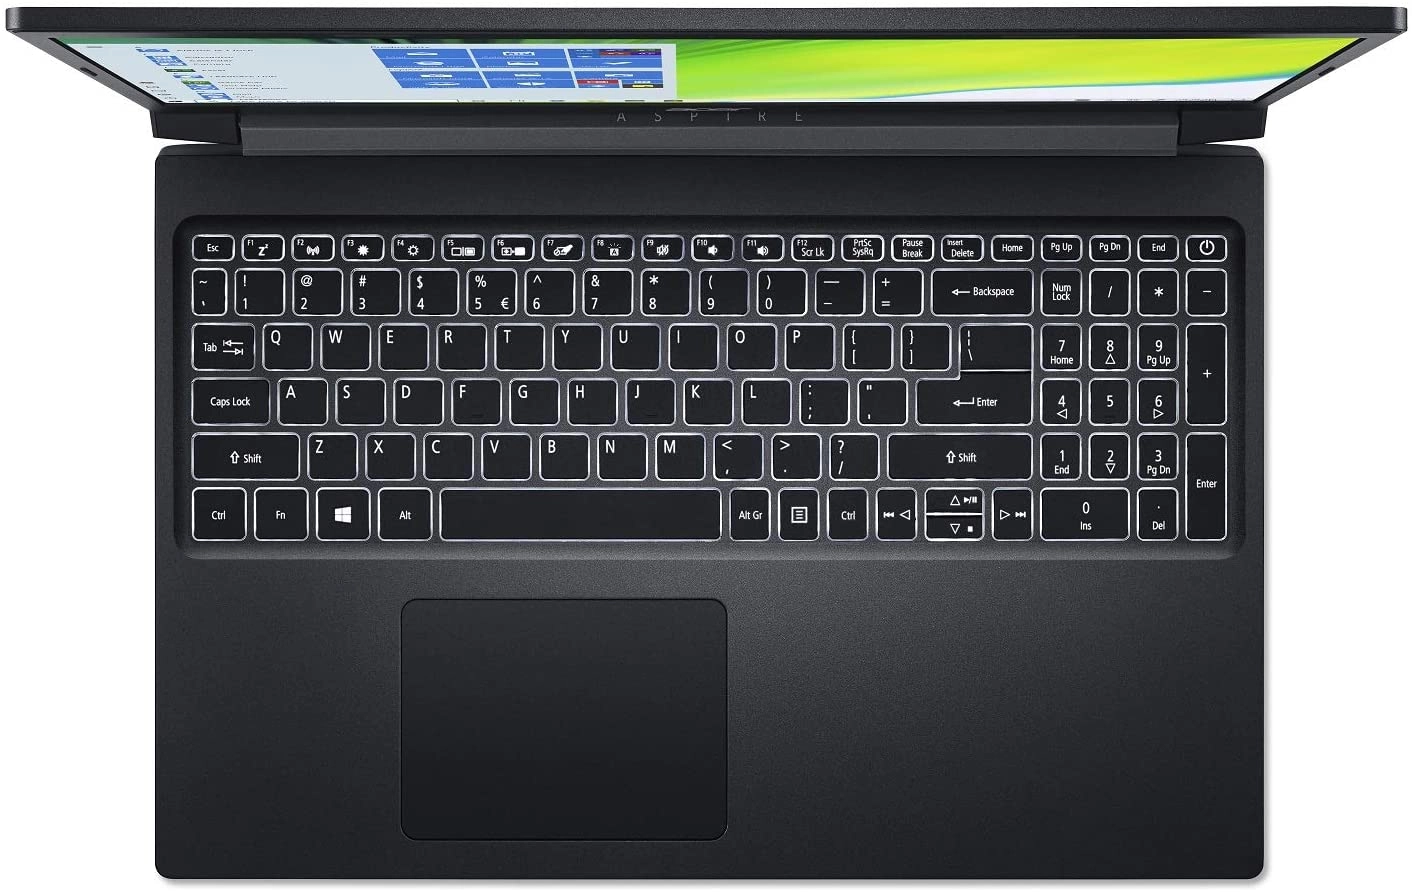 Acer A715-75G-544V laptop image